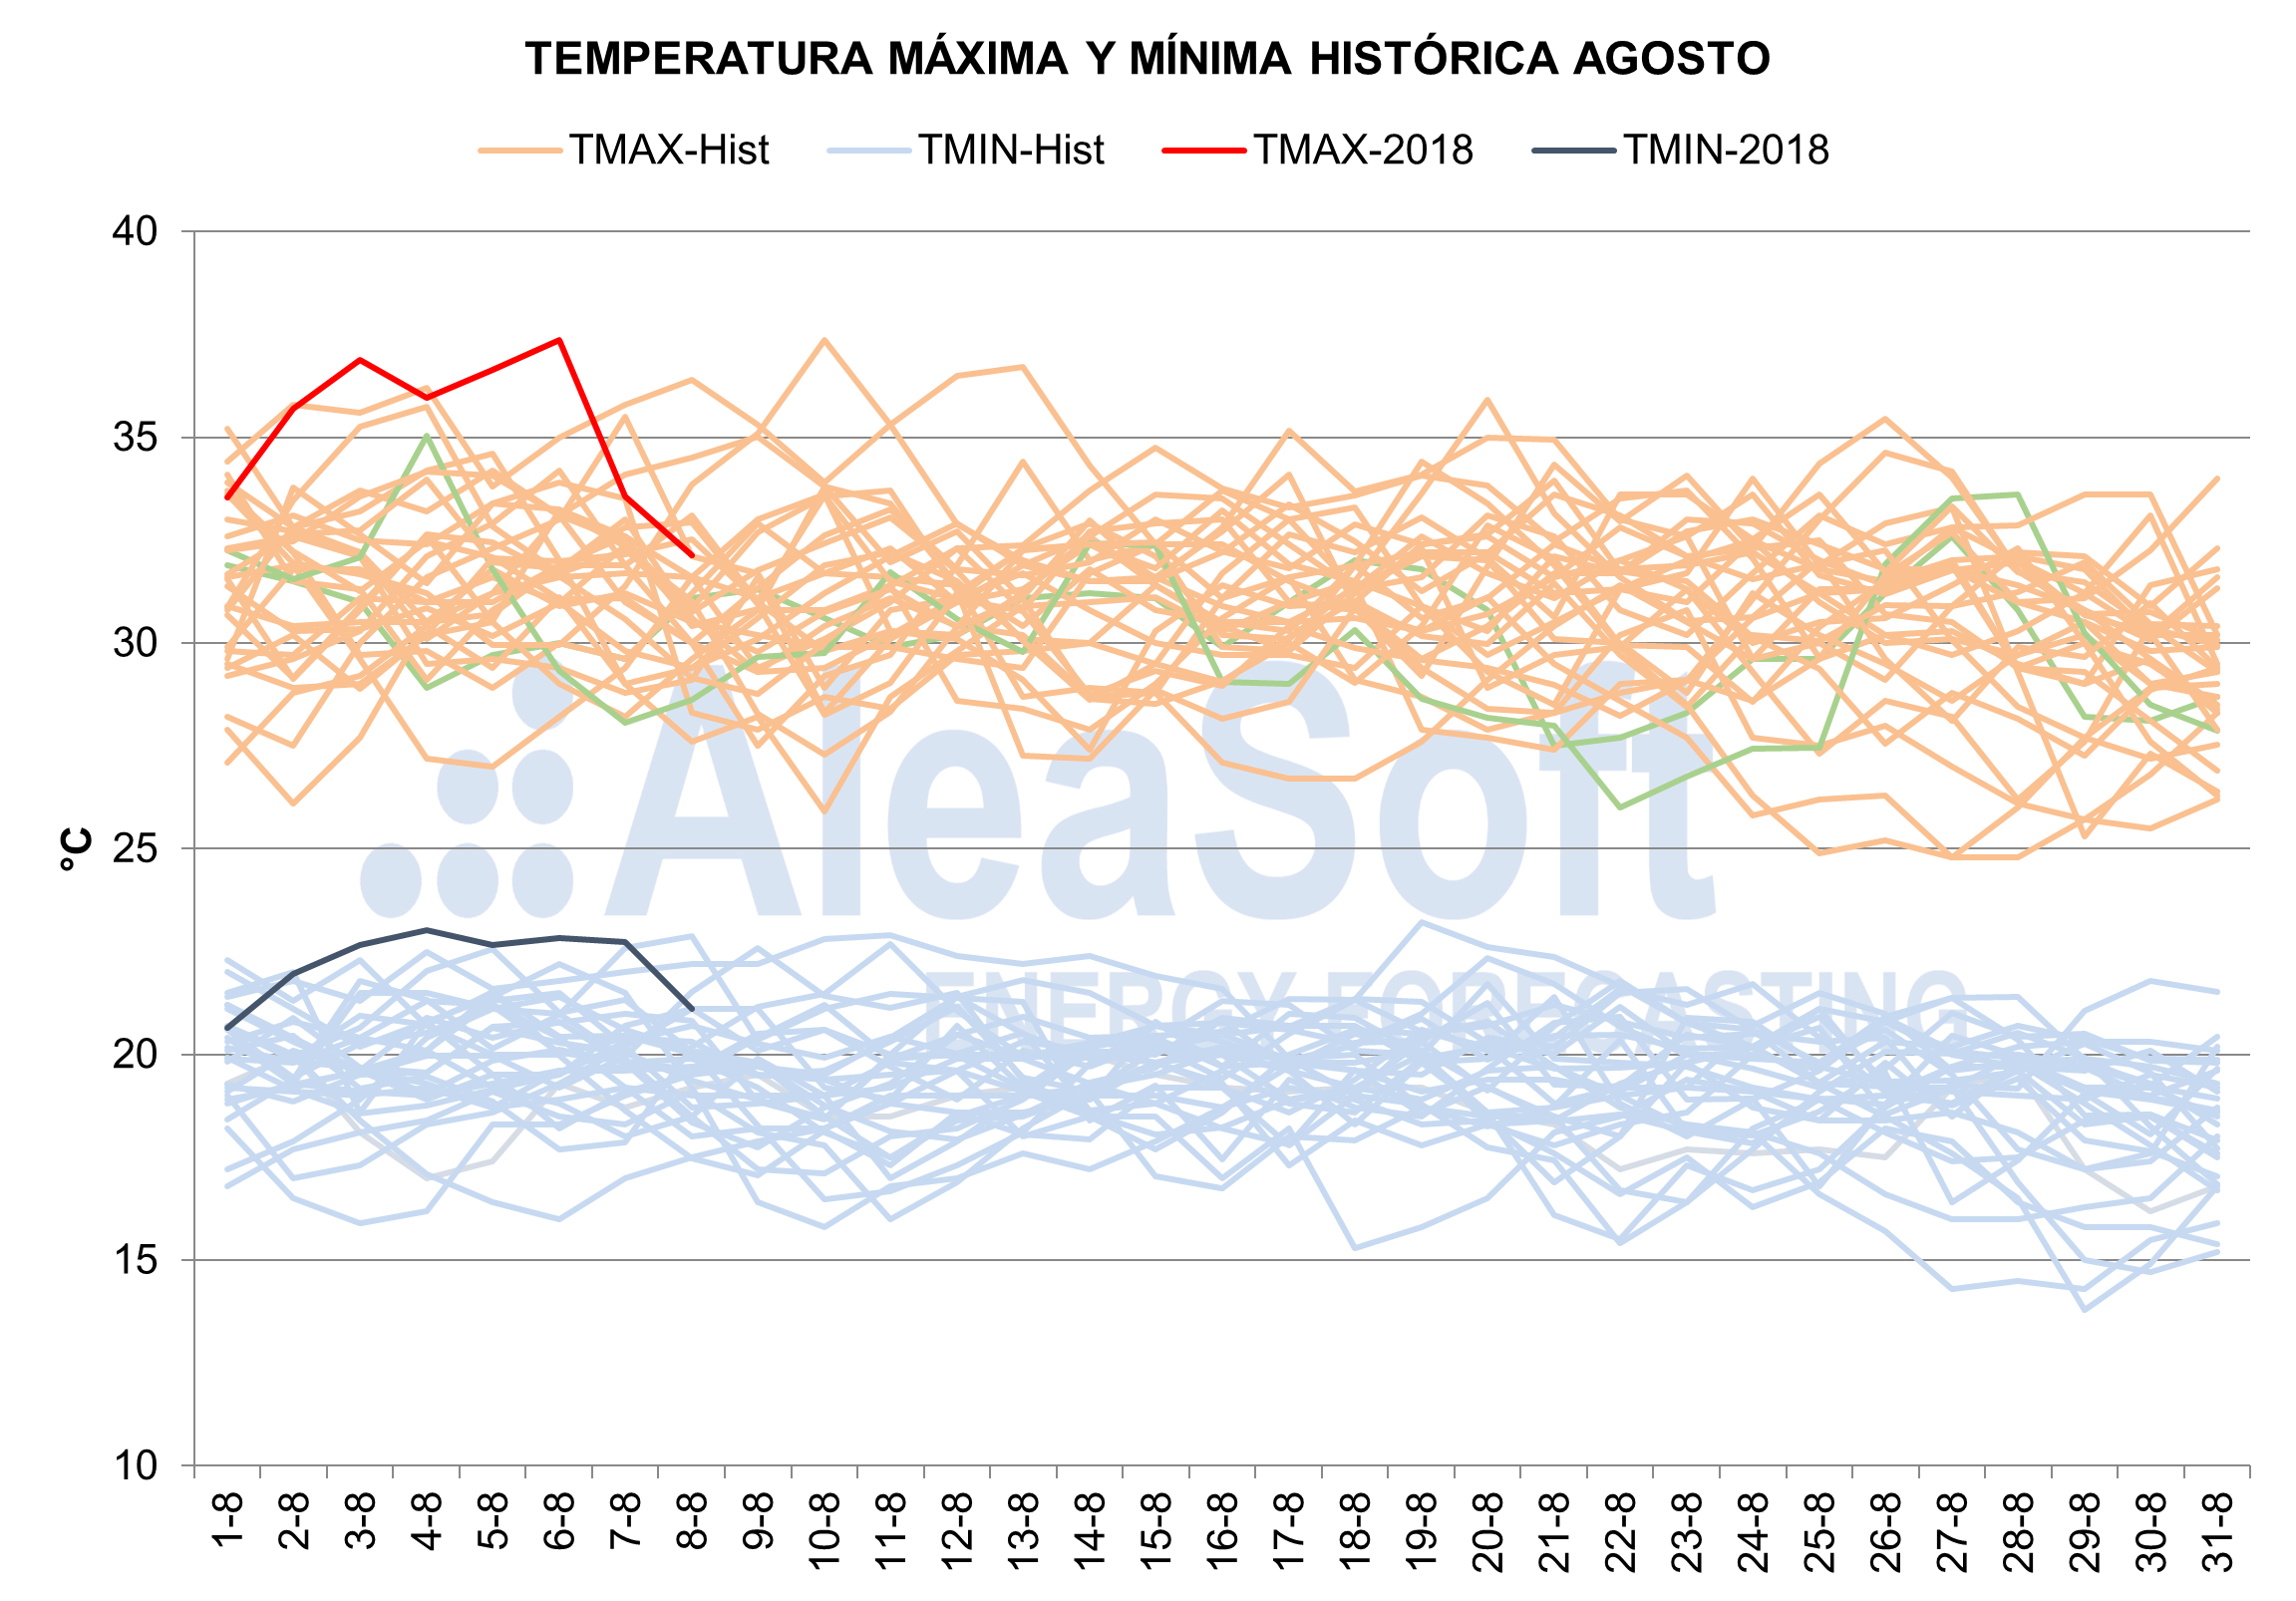 AleaSoft: La ola de calor de inicios de agosto bate record en temperatura, demanda y precios